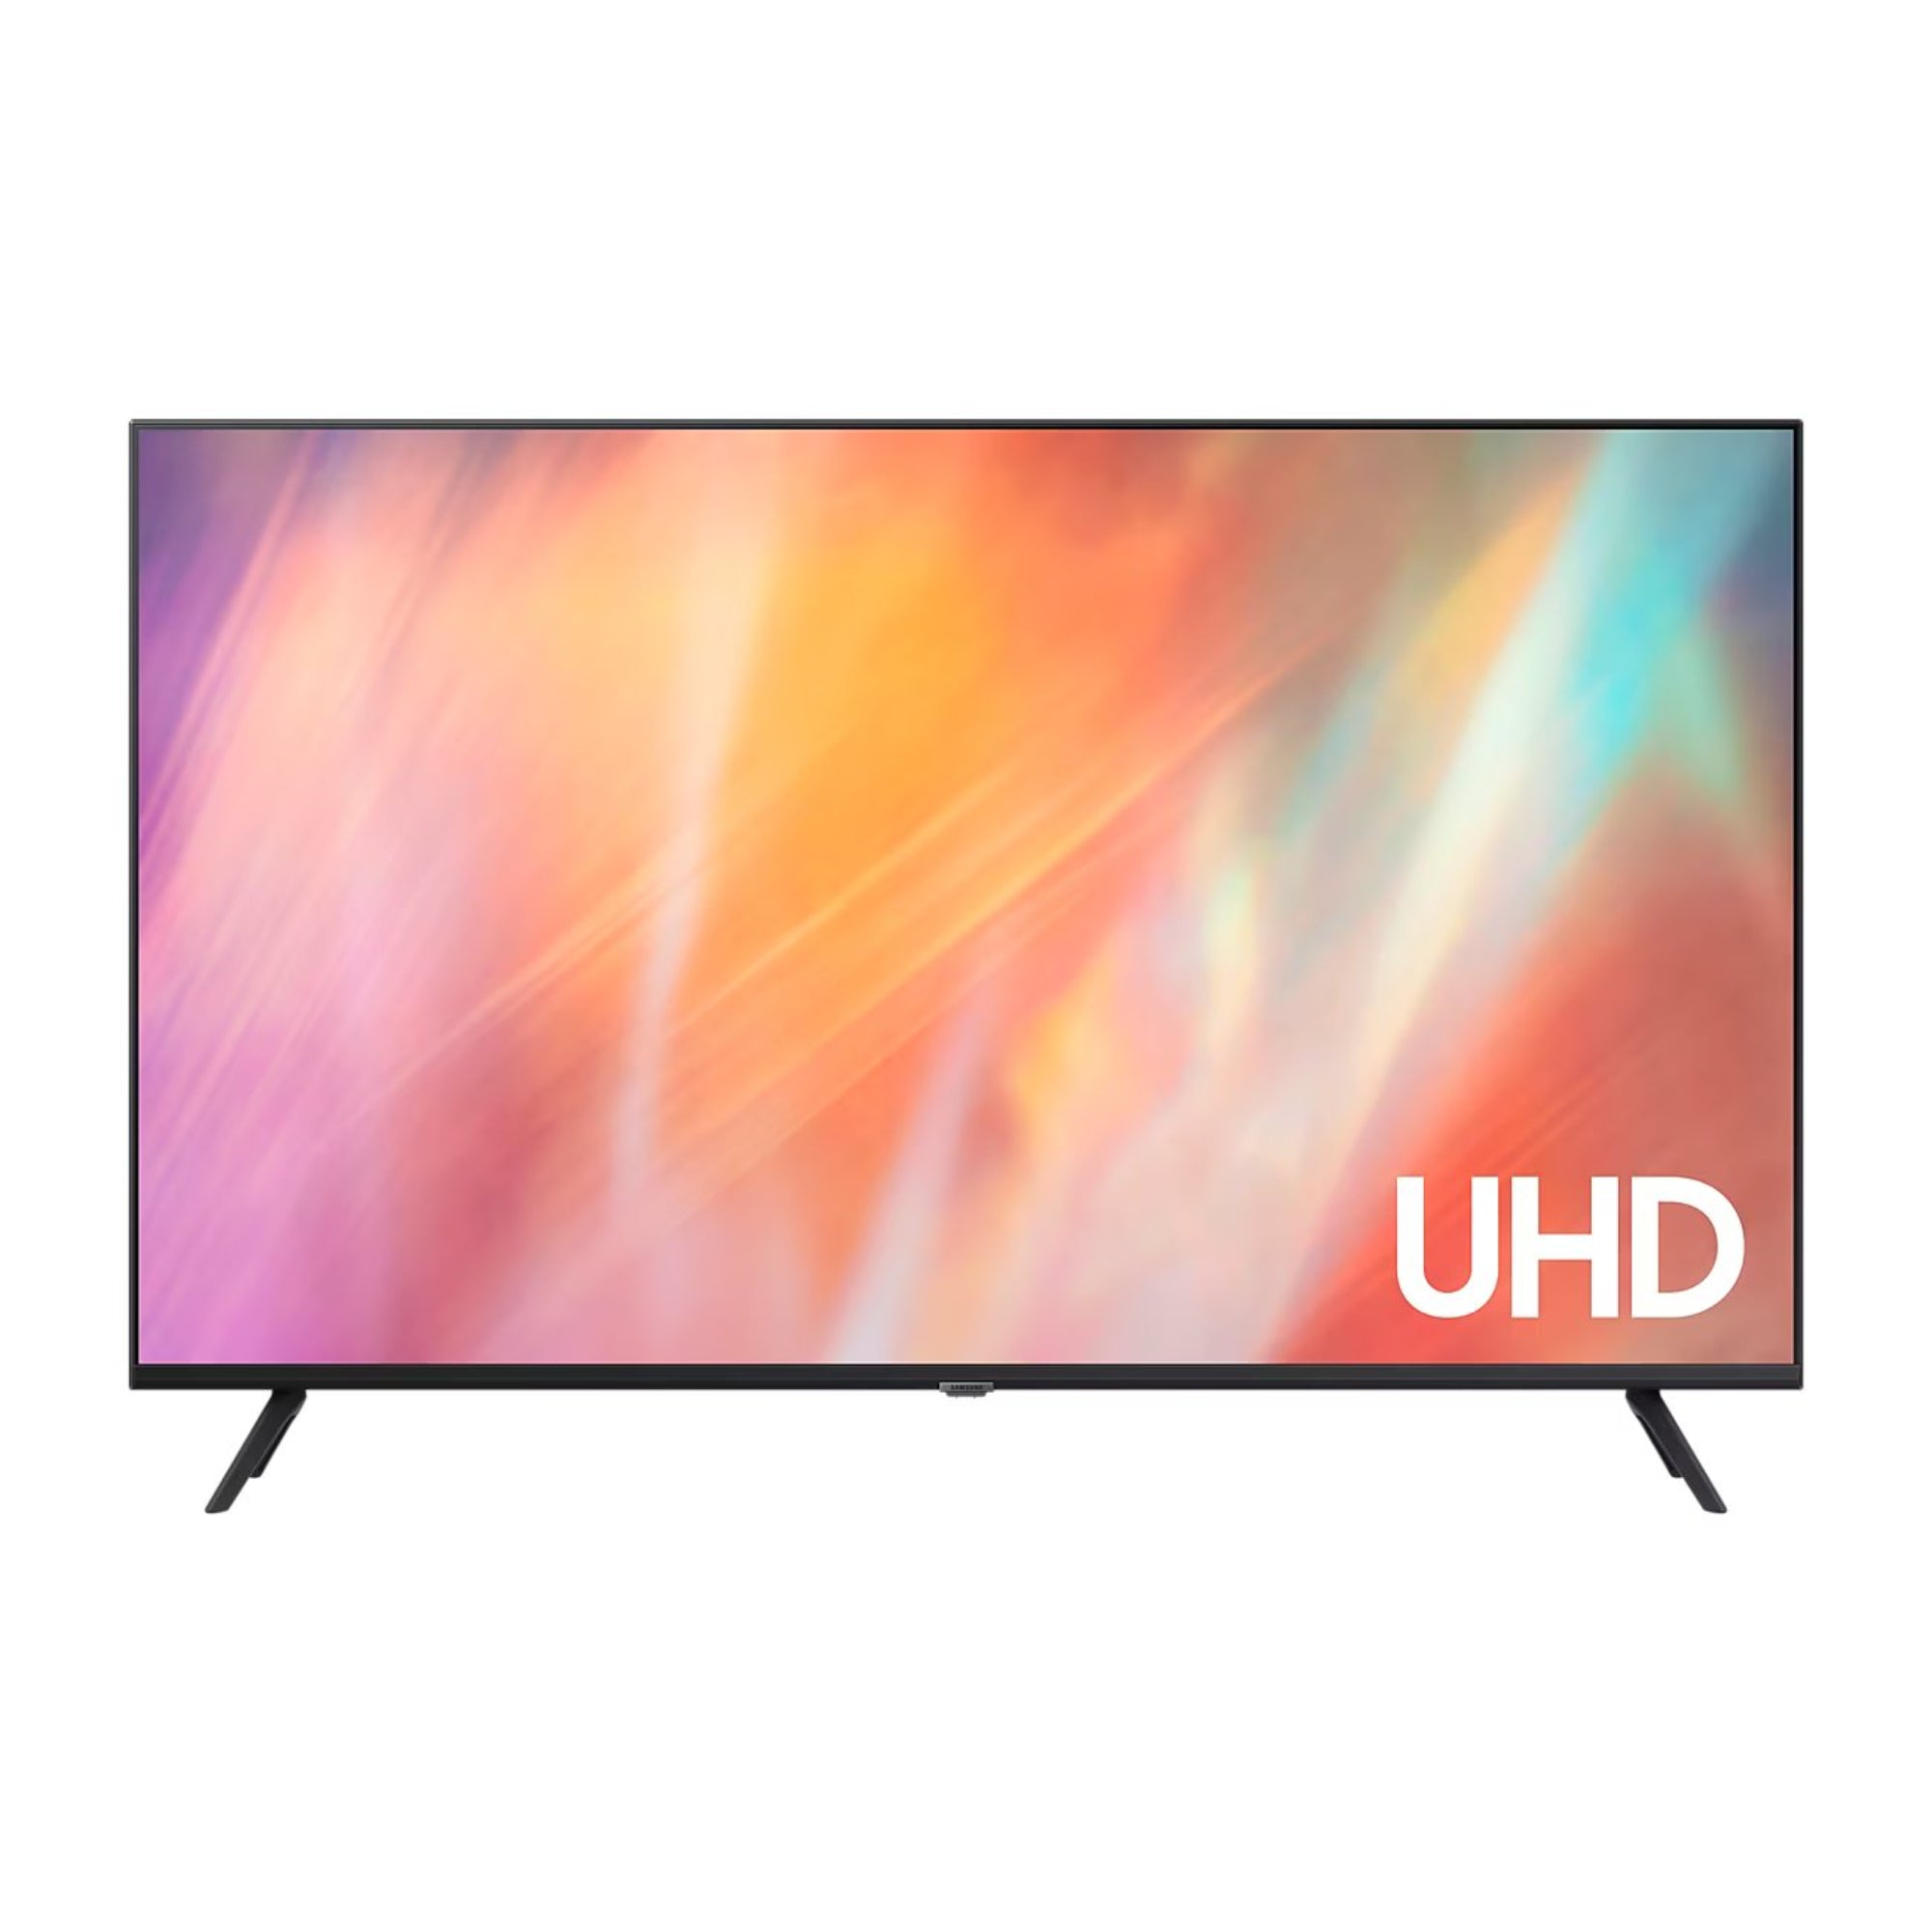 SAMSUNG 55 Inch Ultra HD (4K) LED Television (UA55AU7600)